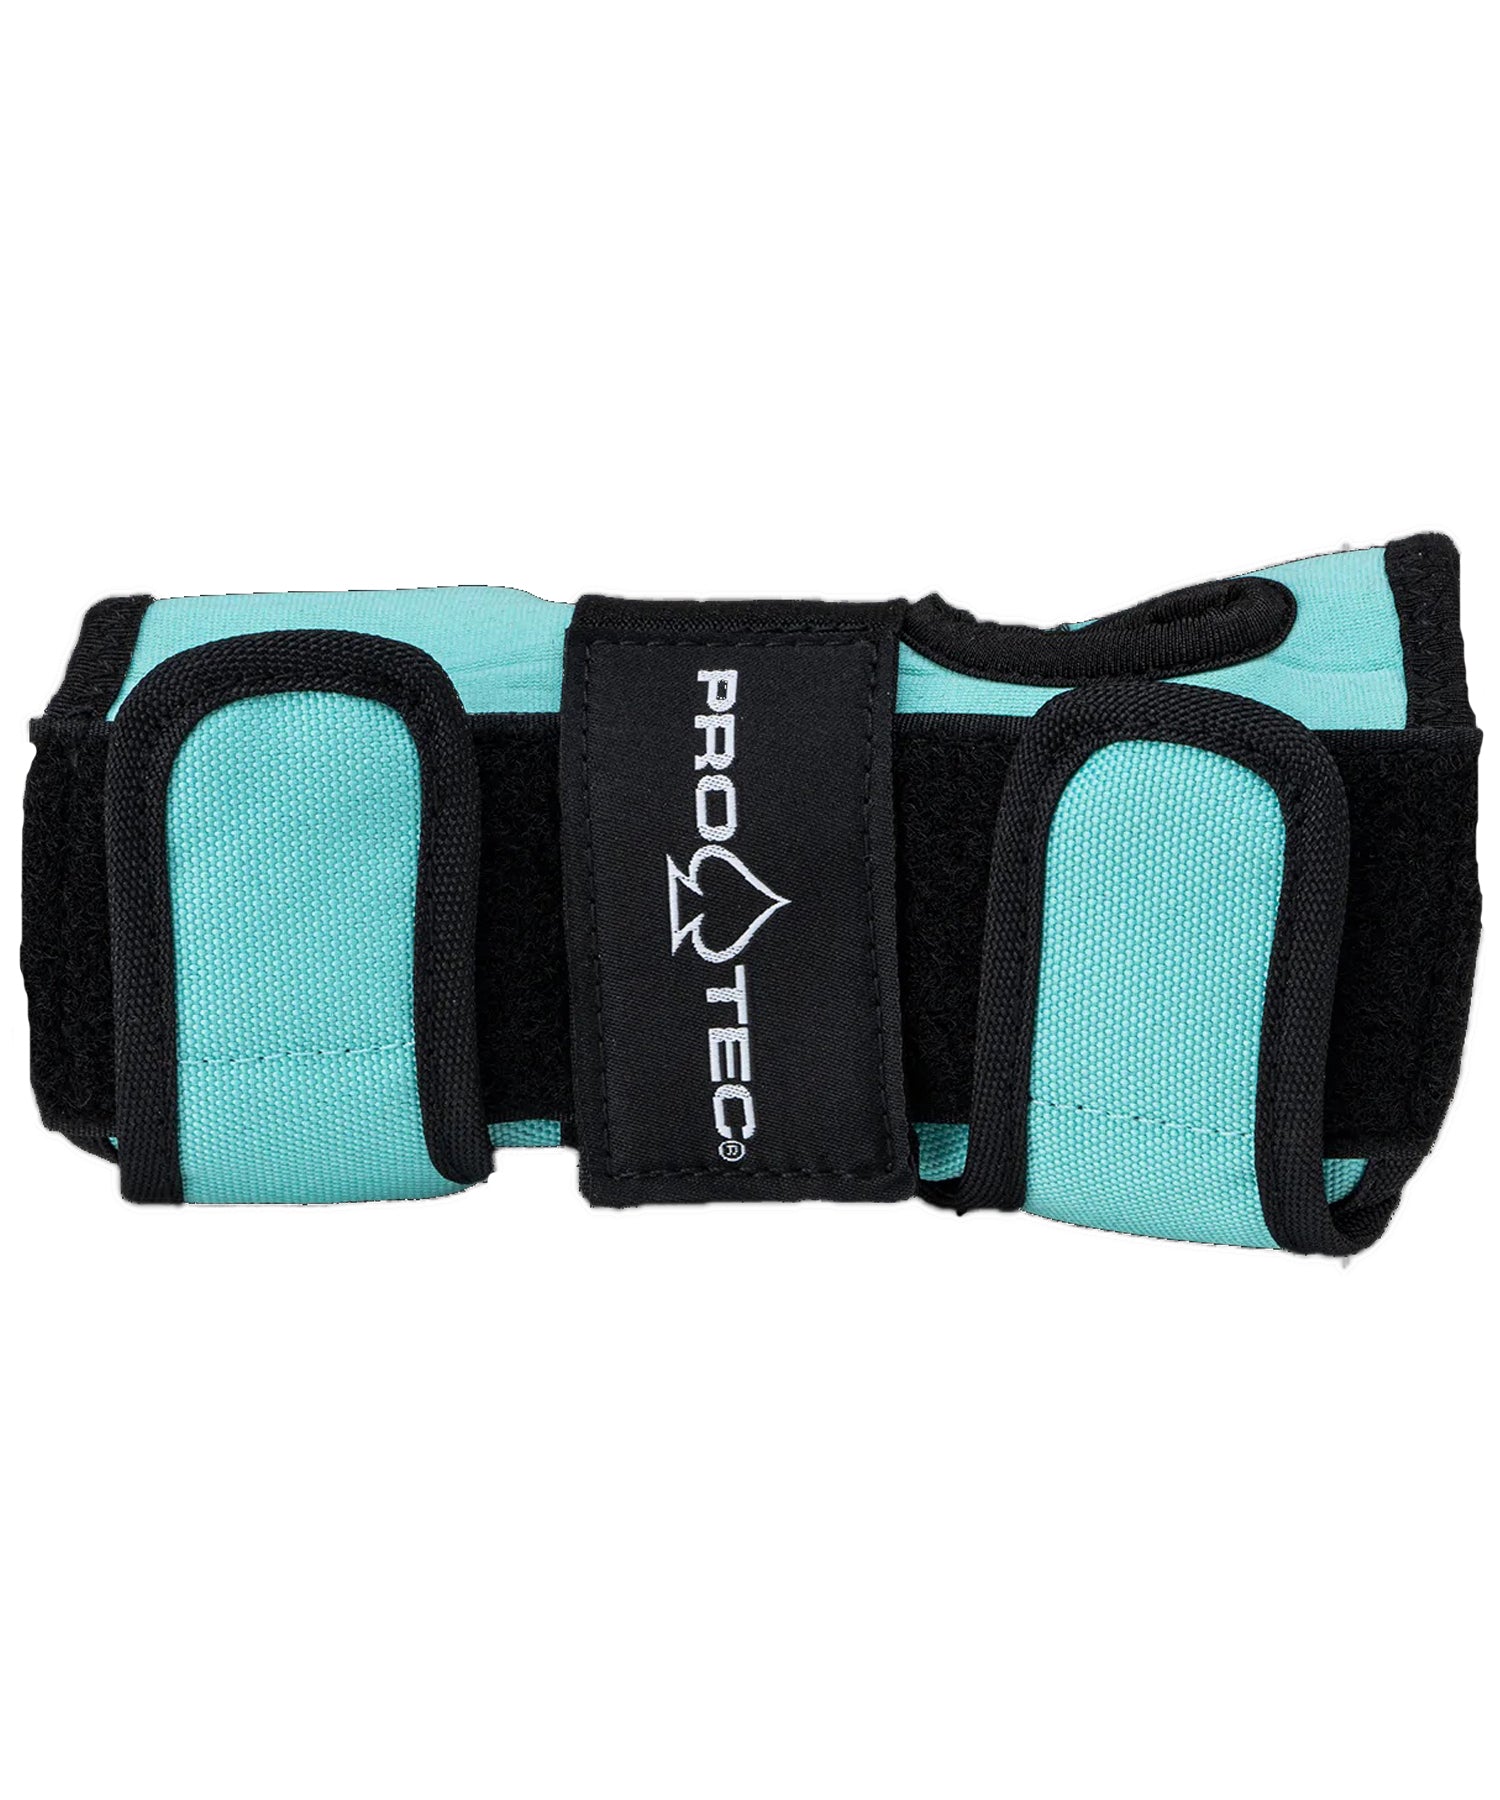 pro-tec-jr-street-gesr-3-pack-open-back-protecciones de color azul para niños-tus-rodillas-codos y muñecas estaran protegidas contra golpes y abrasiones.